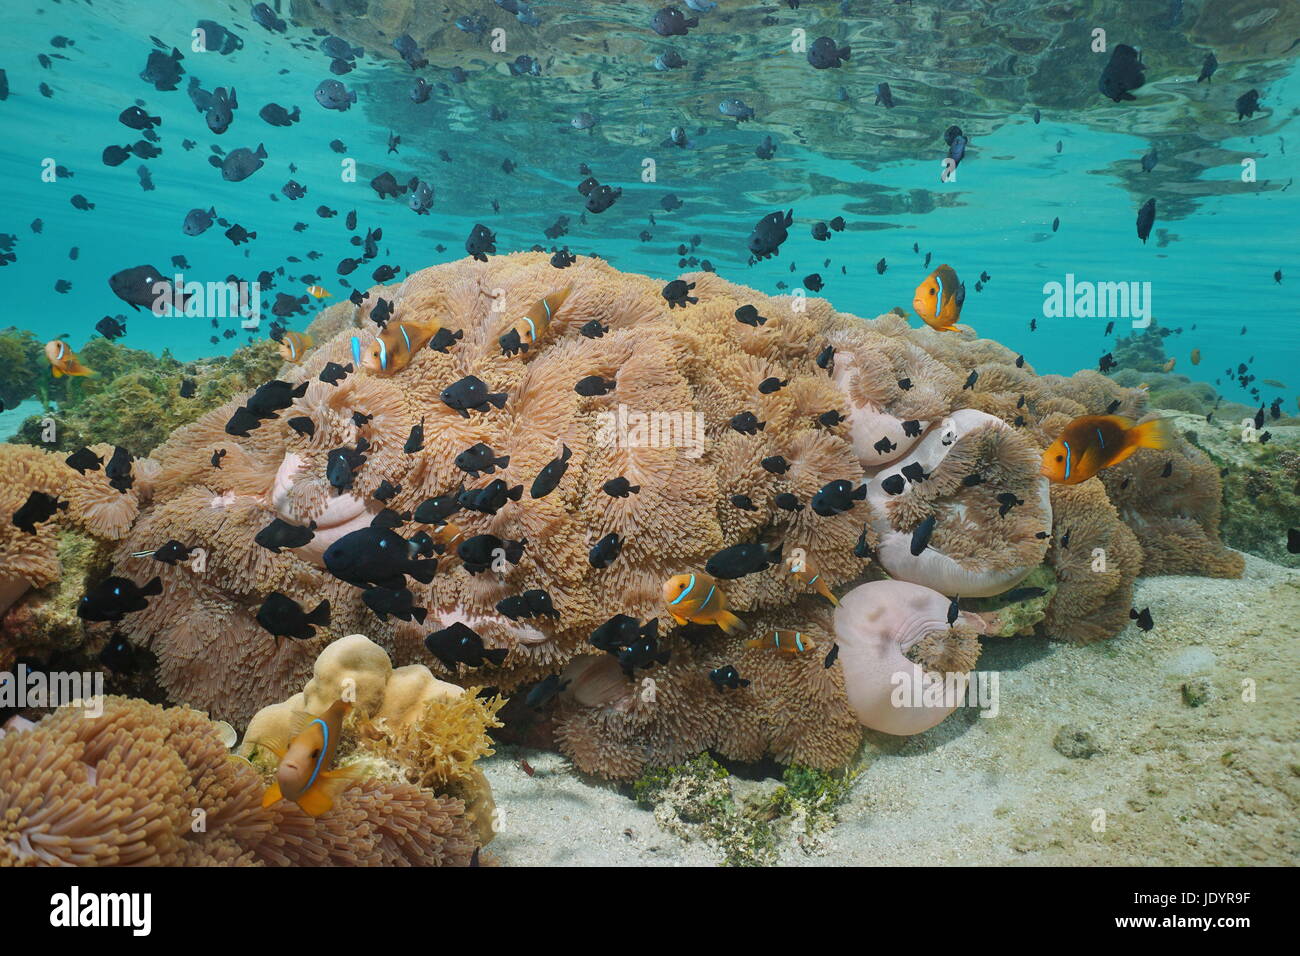 Schwarm von tropischen Fischen Anemonenfische und Riffbarsche mit viele Seeanemonen unter Wasser in der Lagune von Huahine Insel, Pazifik, Französisch-Polynesien Stockfoto